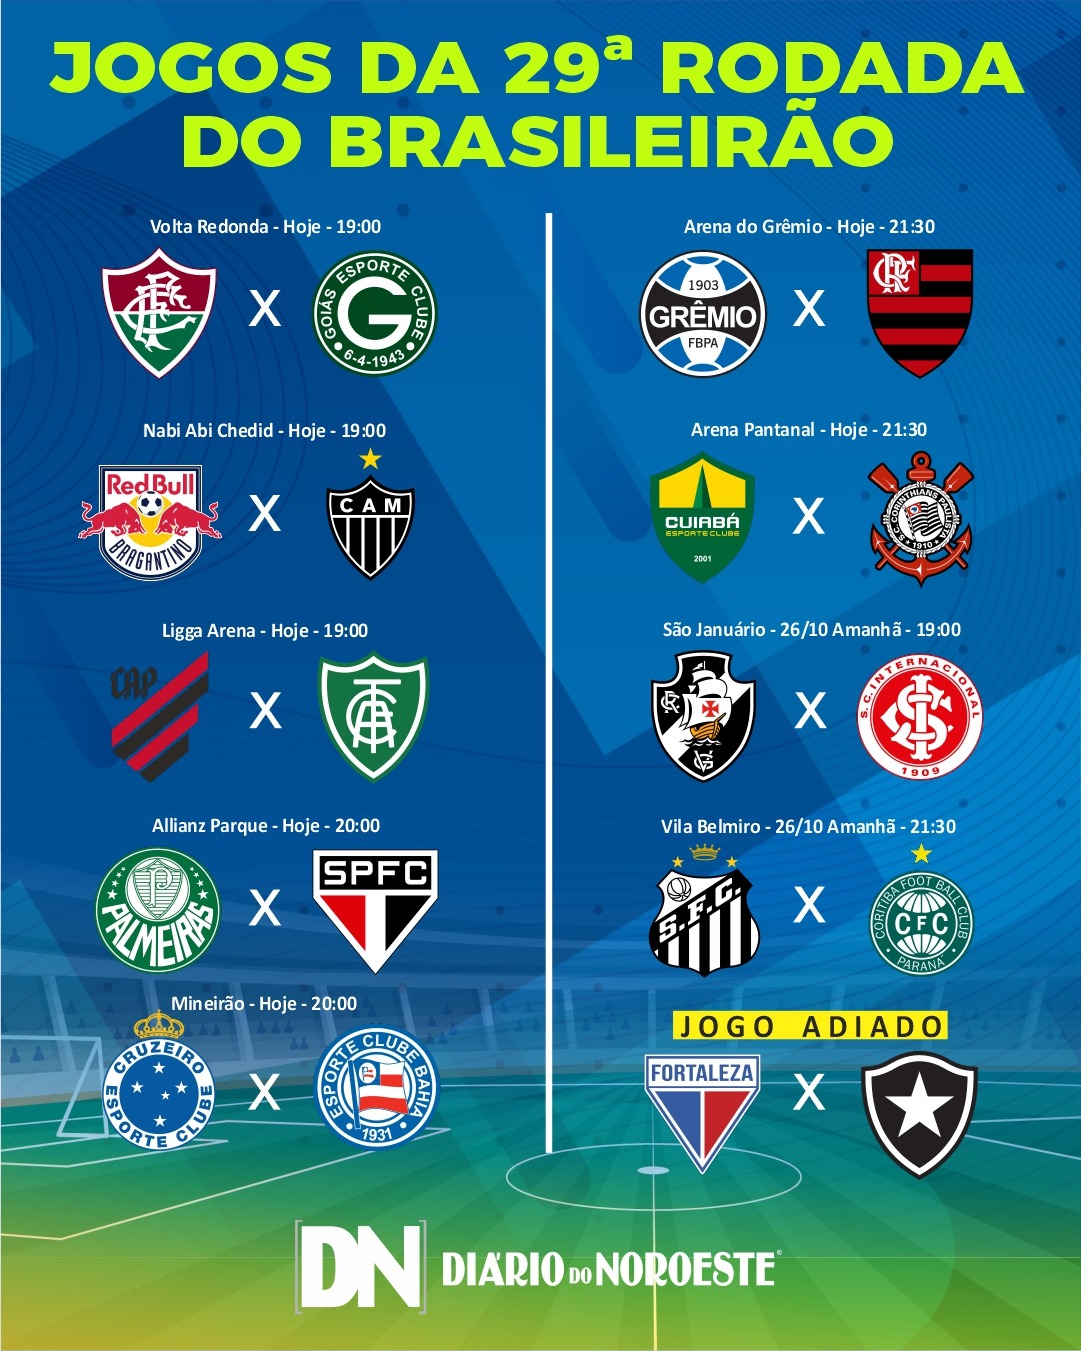 Rodada 29: Confira os jogos do Campeonato Brasileiro - DIÁRIO DO NOROESTE